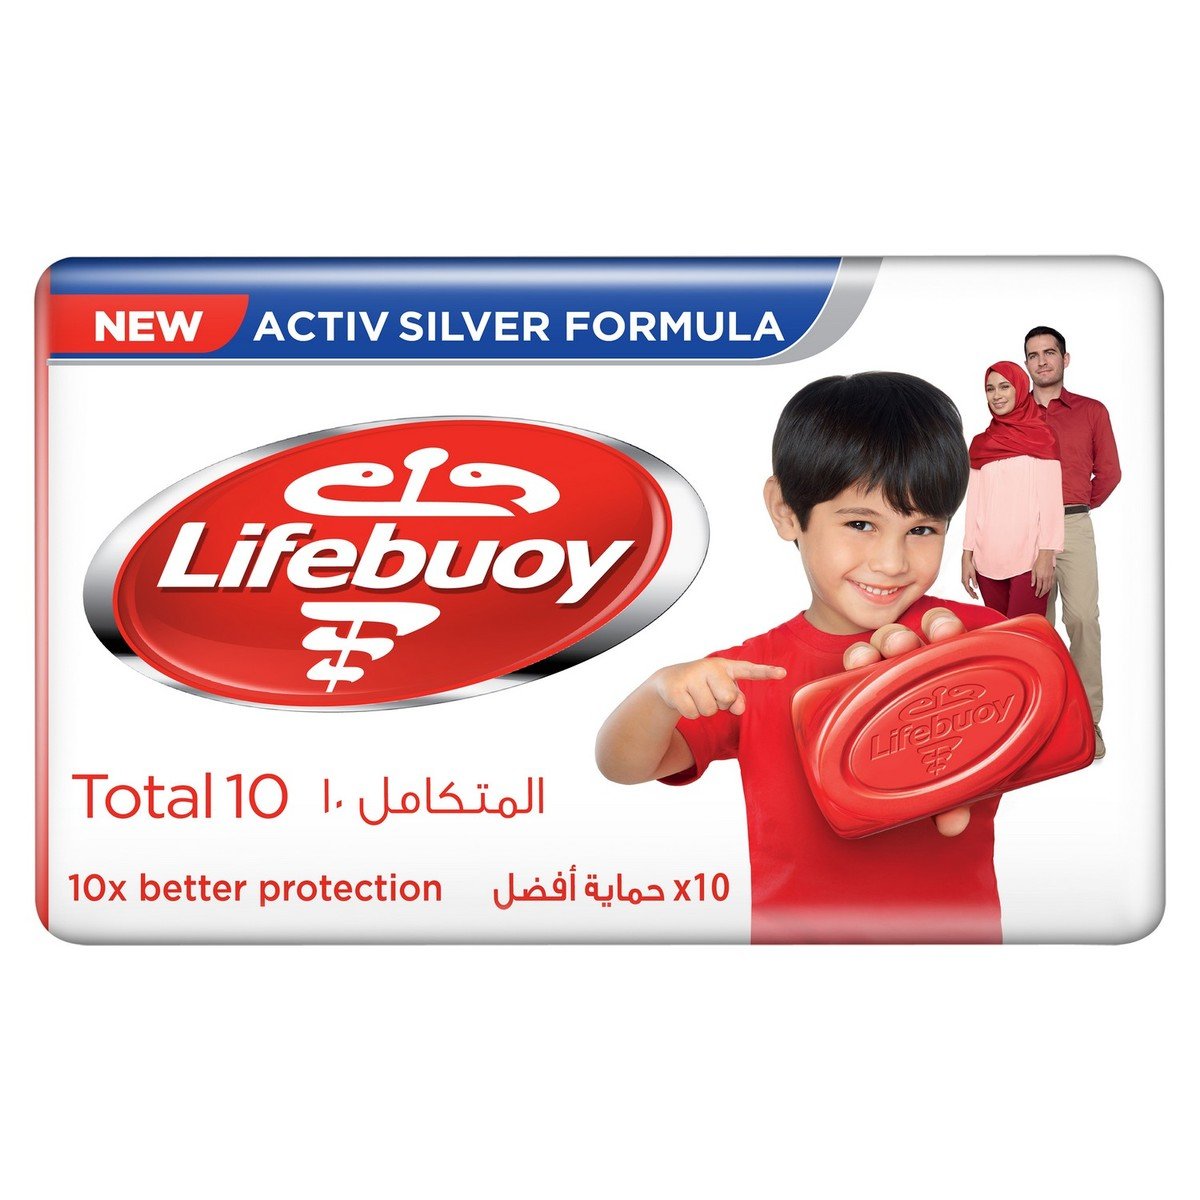 Lifebuoy Anti Bacterial Bar Total 10 160 g